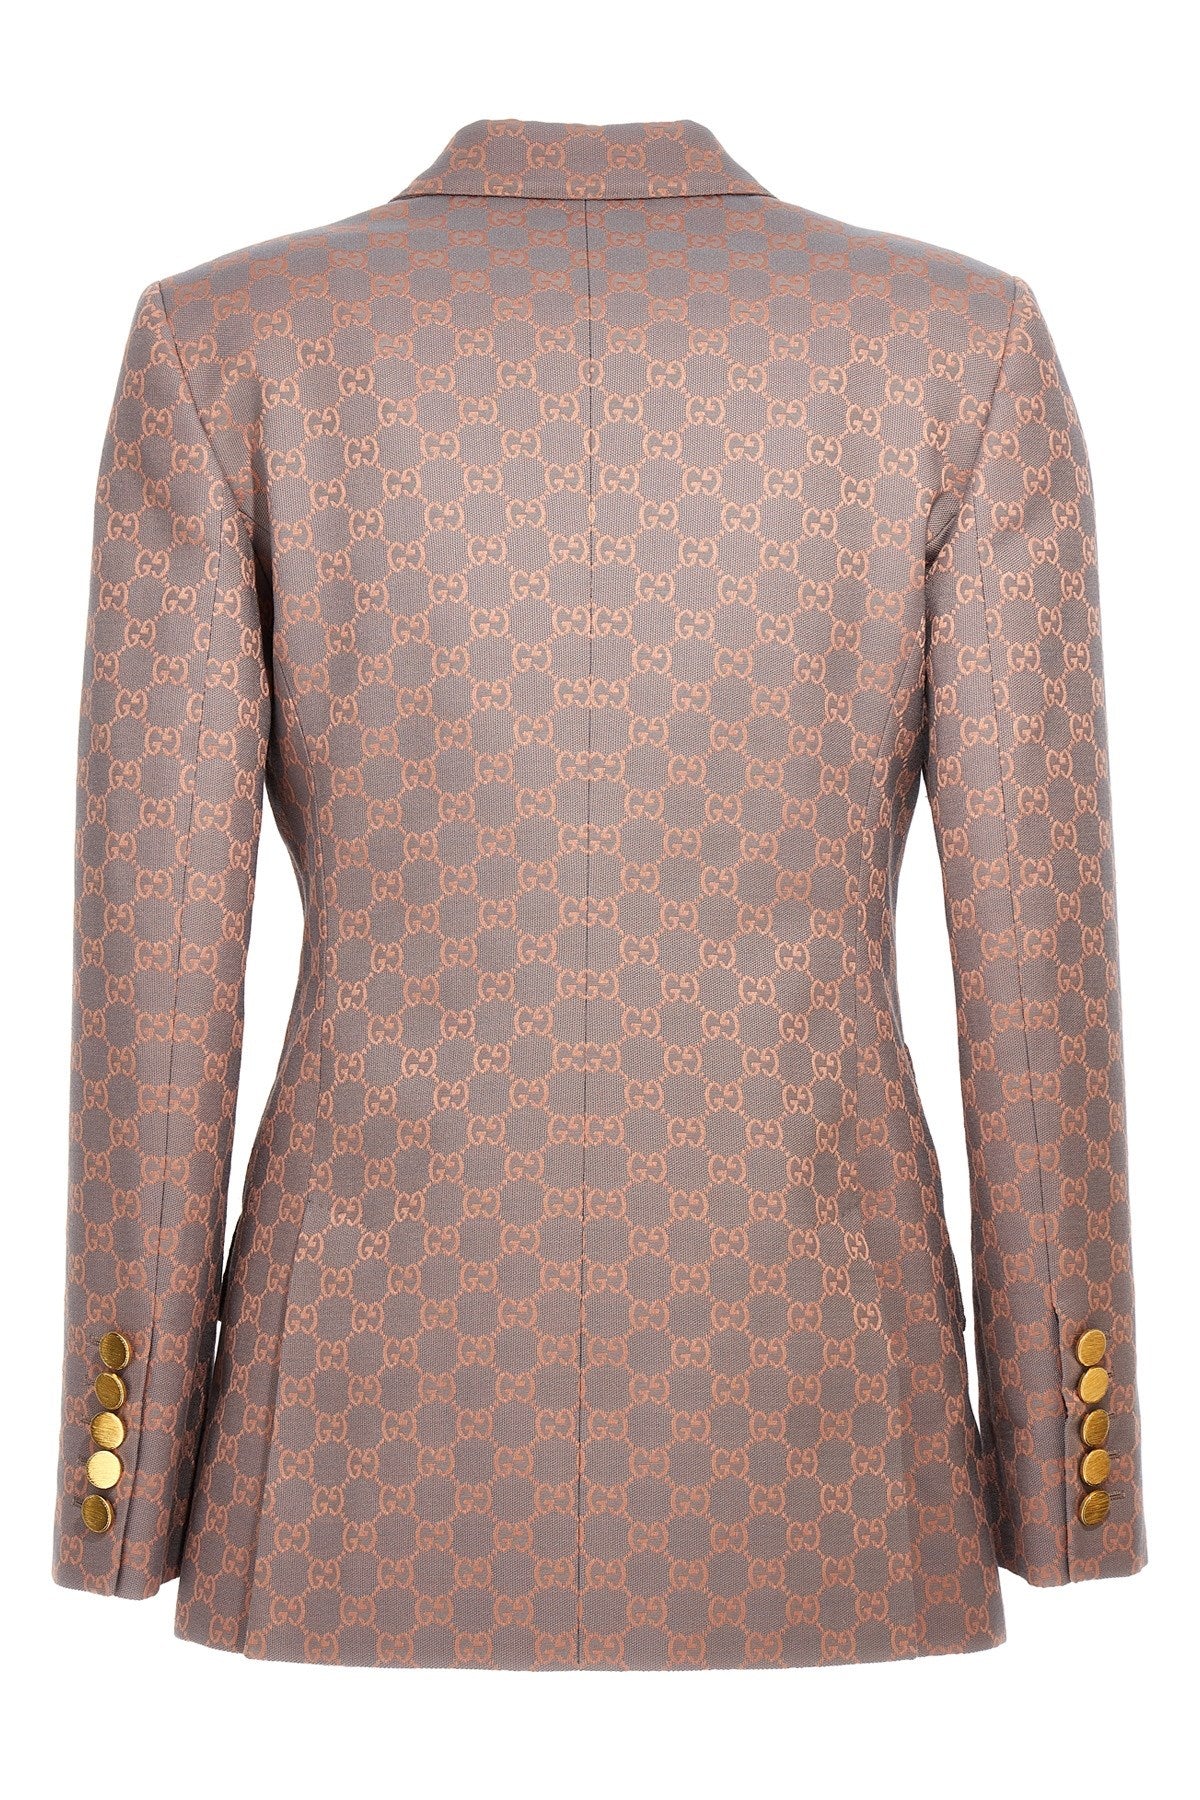 Gucci Women 'Gg' Double Breast Blazer Jacket